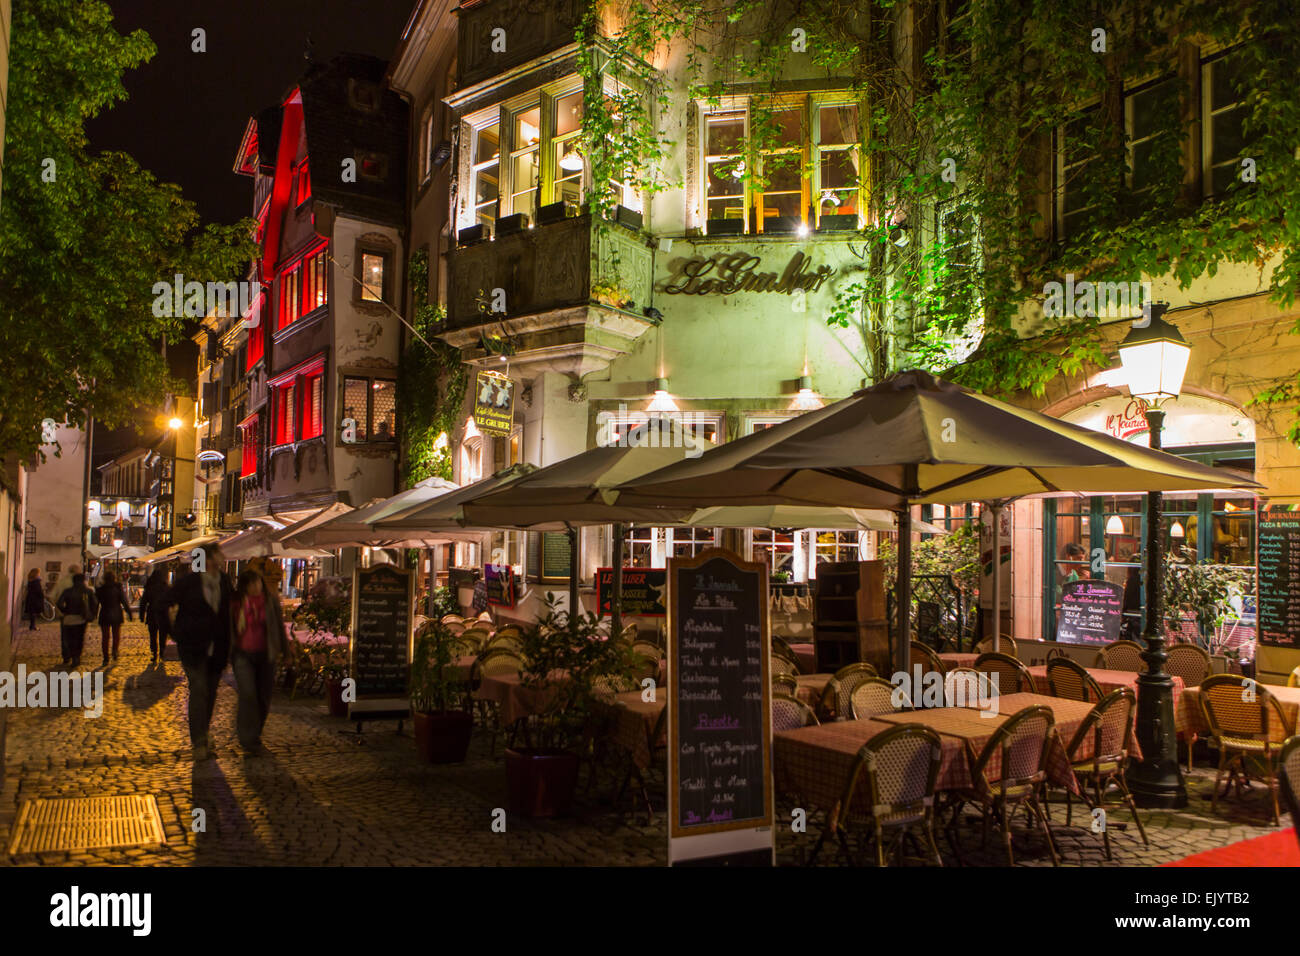 Restaurant Café de la rue des tables et des chaises dans la nuit, Strasbourg, France Banque D'Images